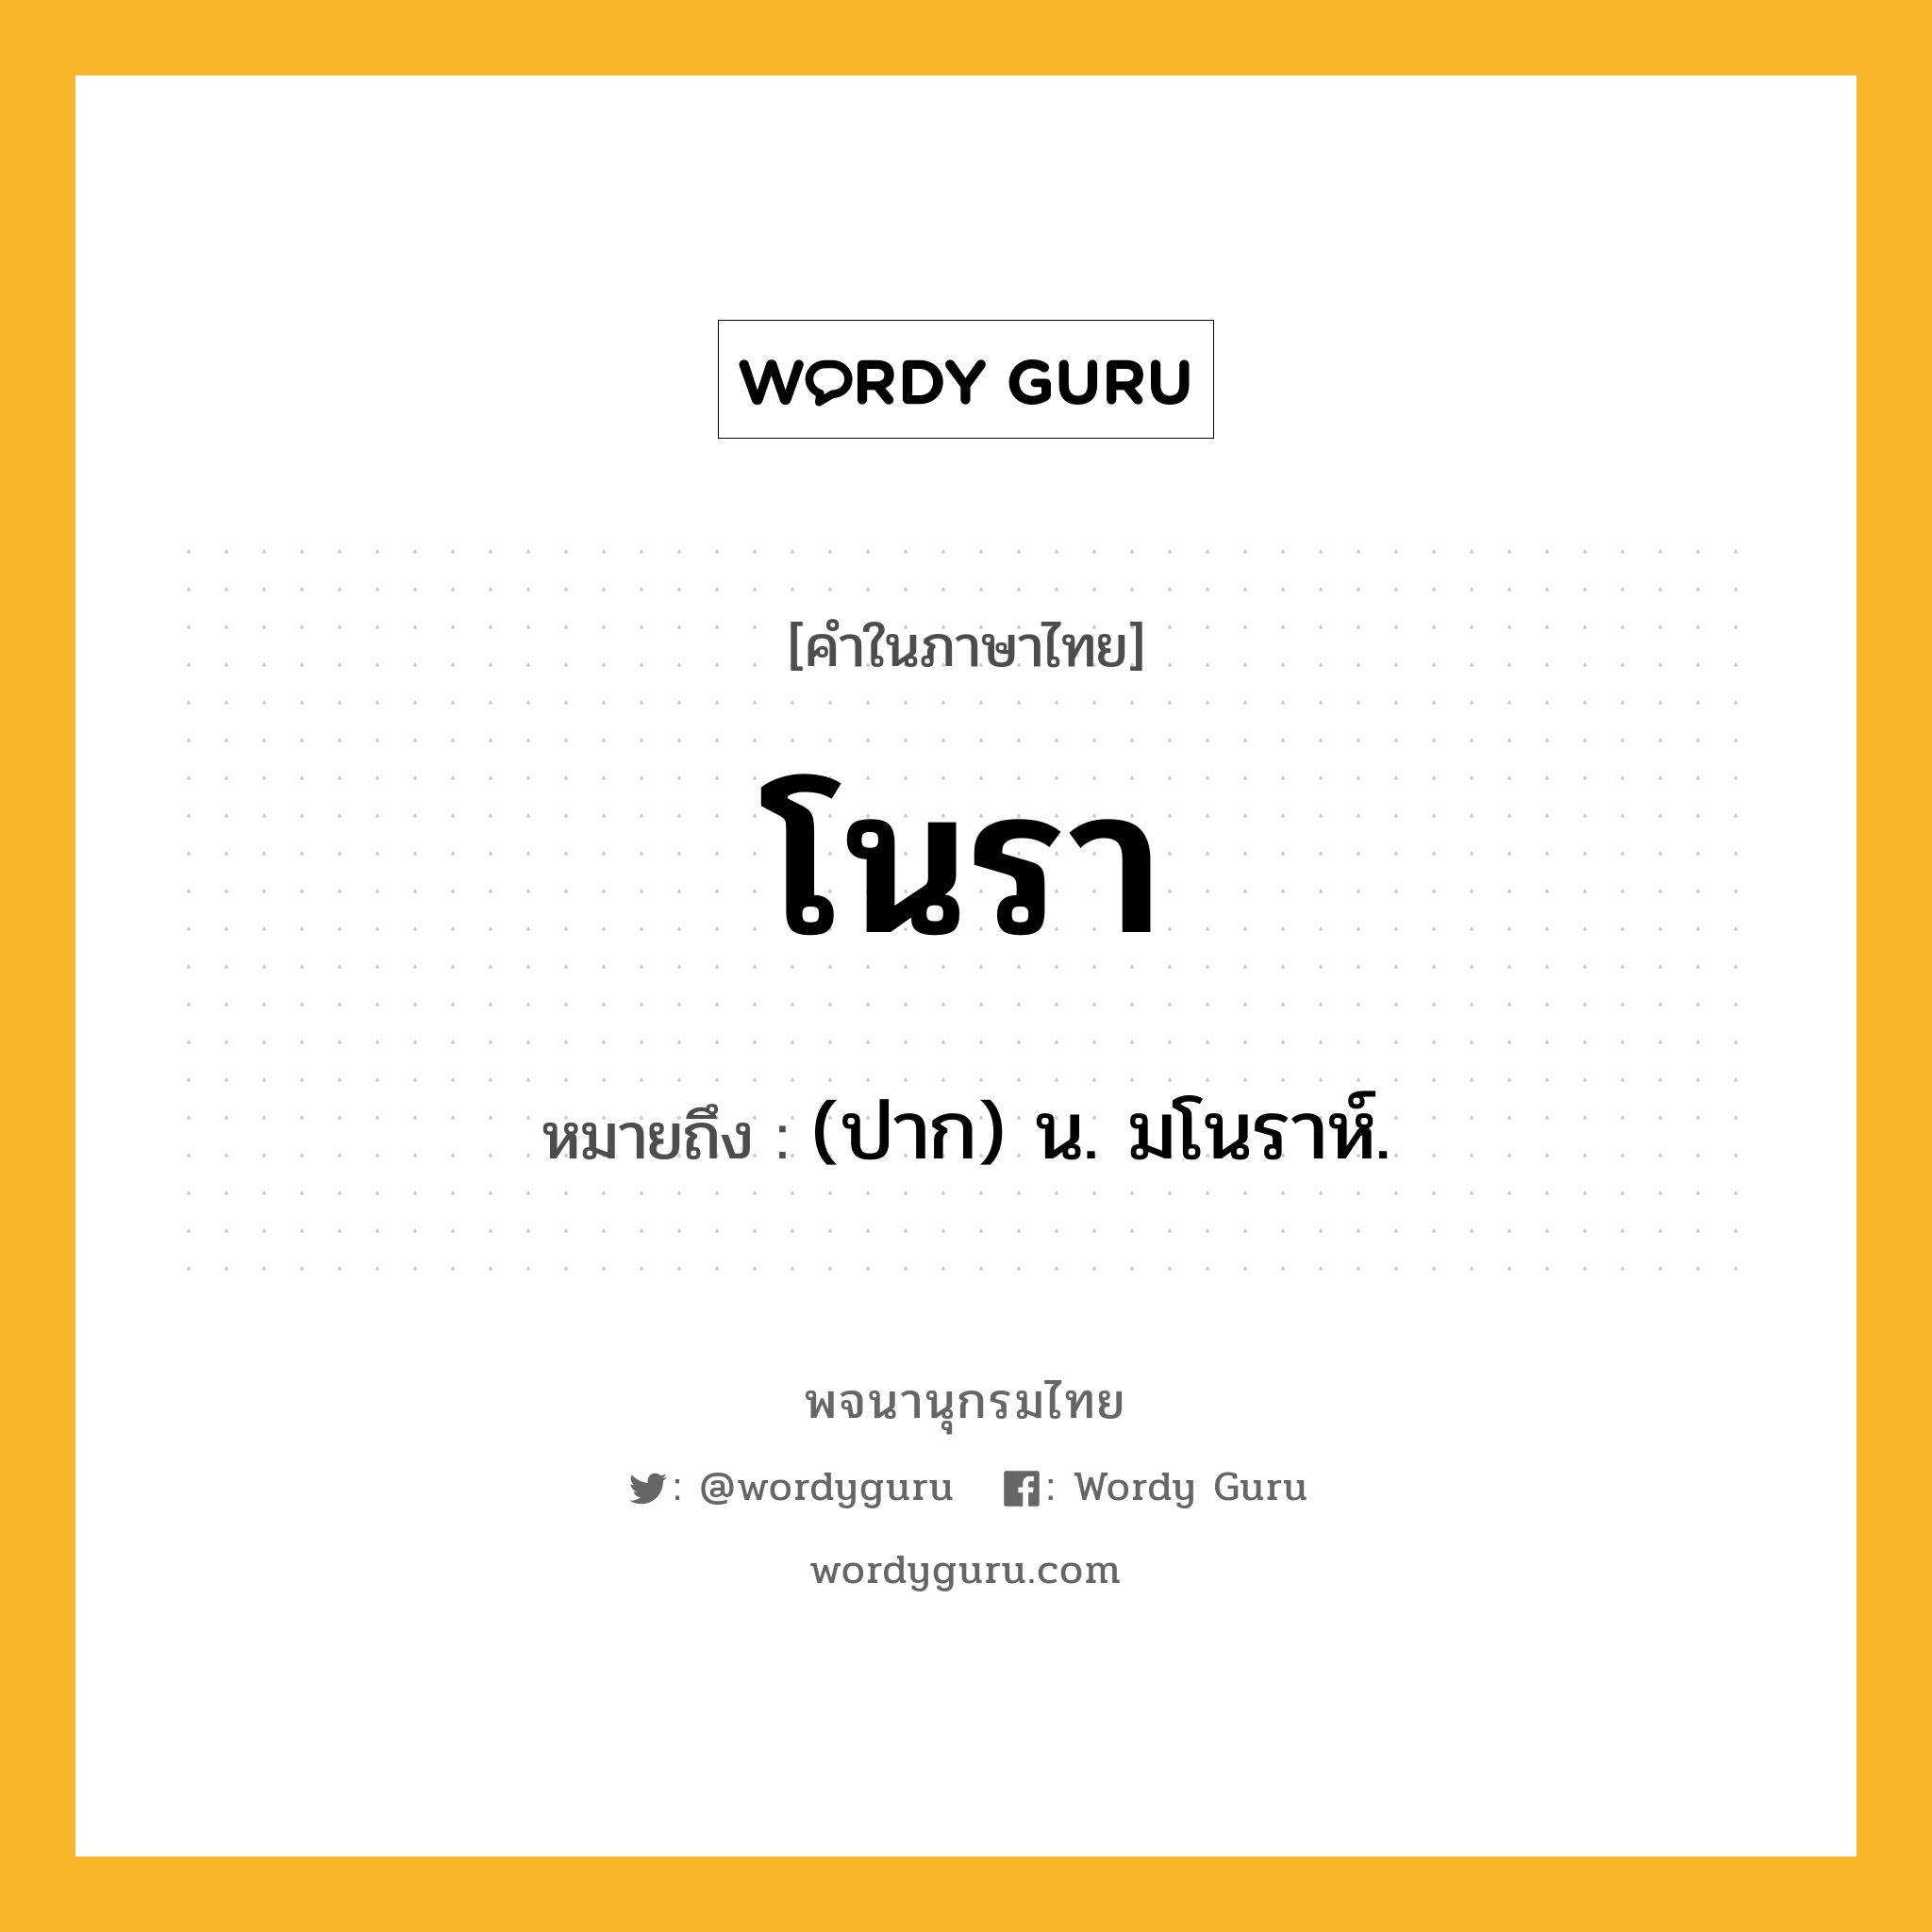 โนรา ความหมาย หมายถึงอะไร?, คำในภาษาไทย โนรา หมายถึง (ปาก) น. มโนราห์.